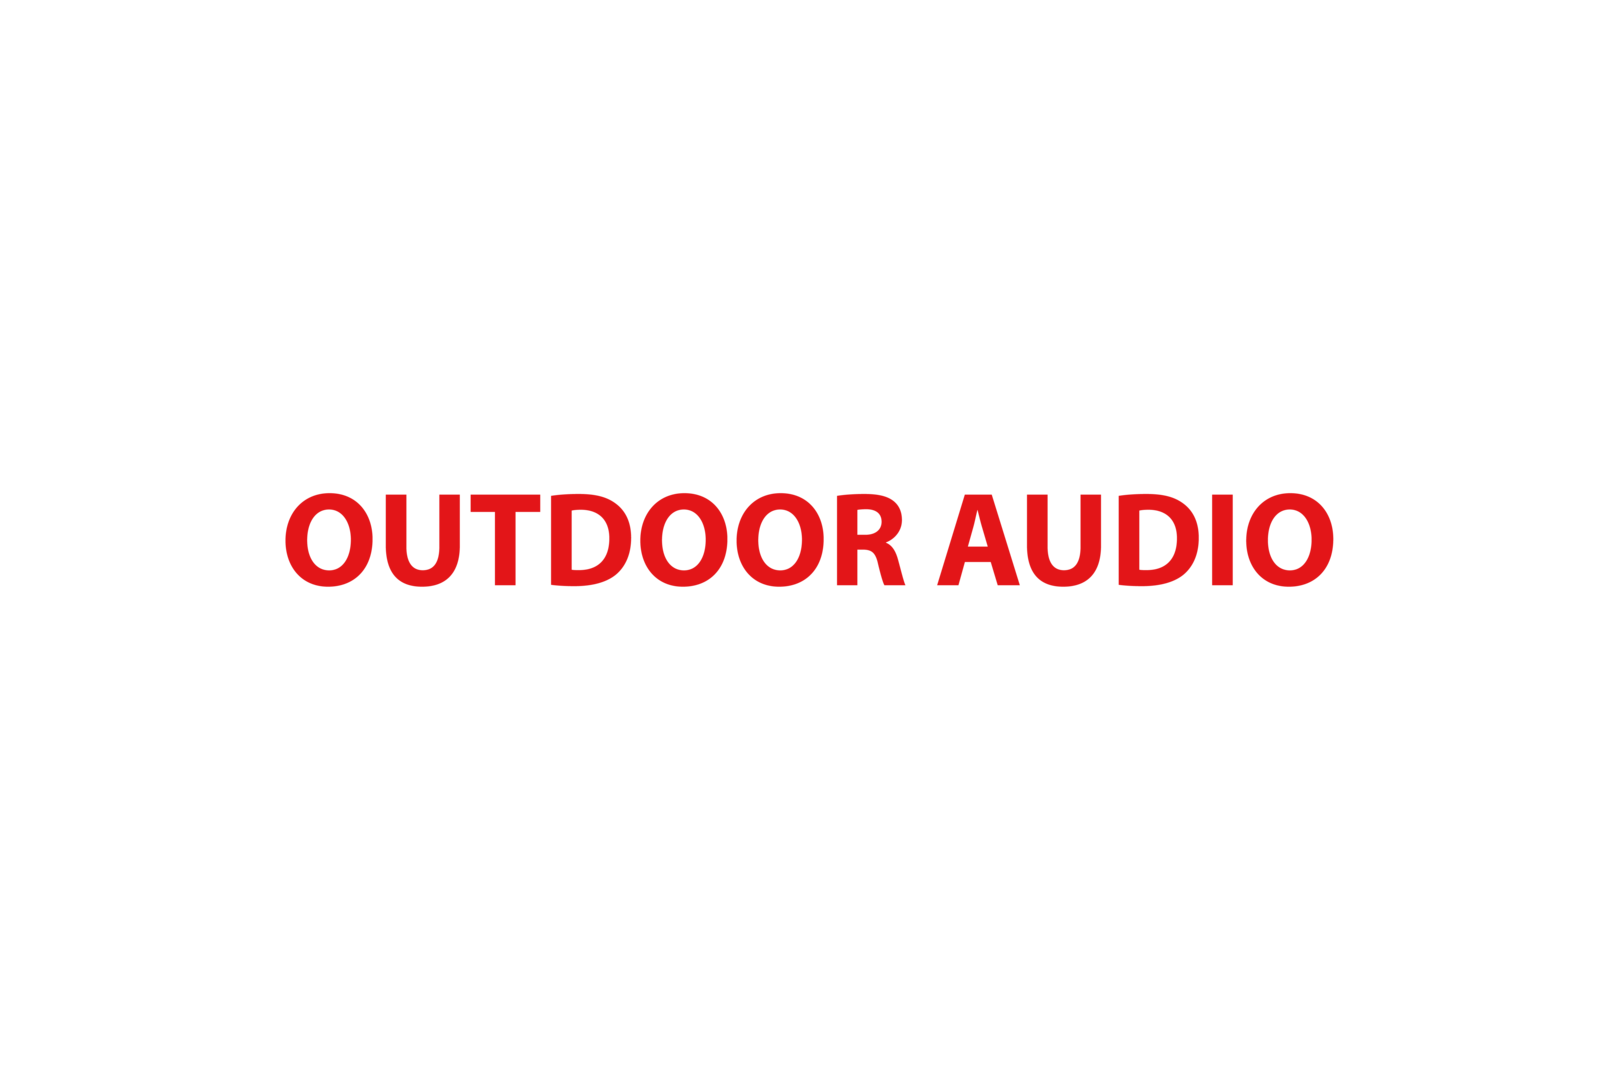 Outdoor audio